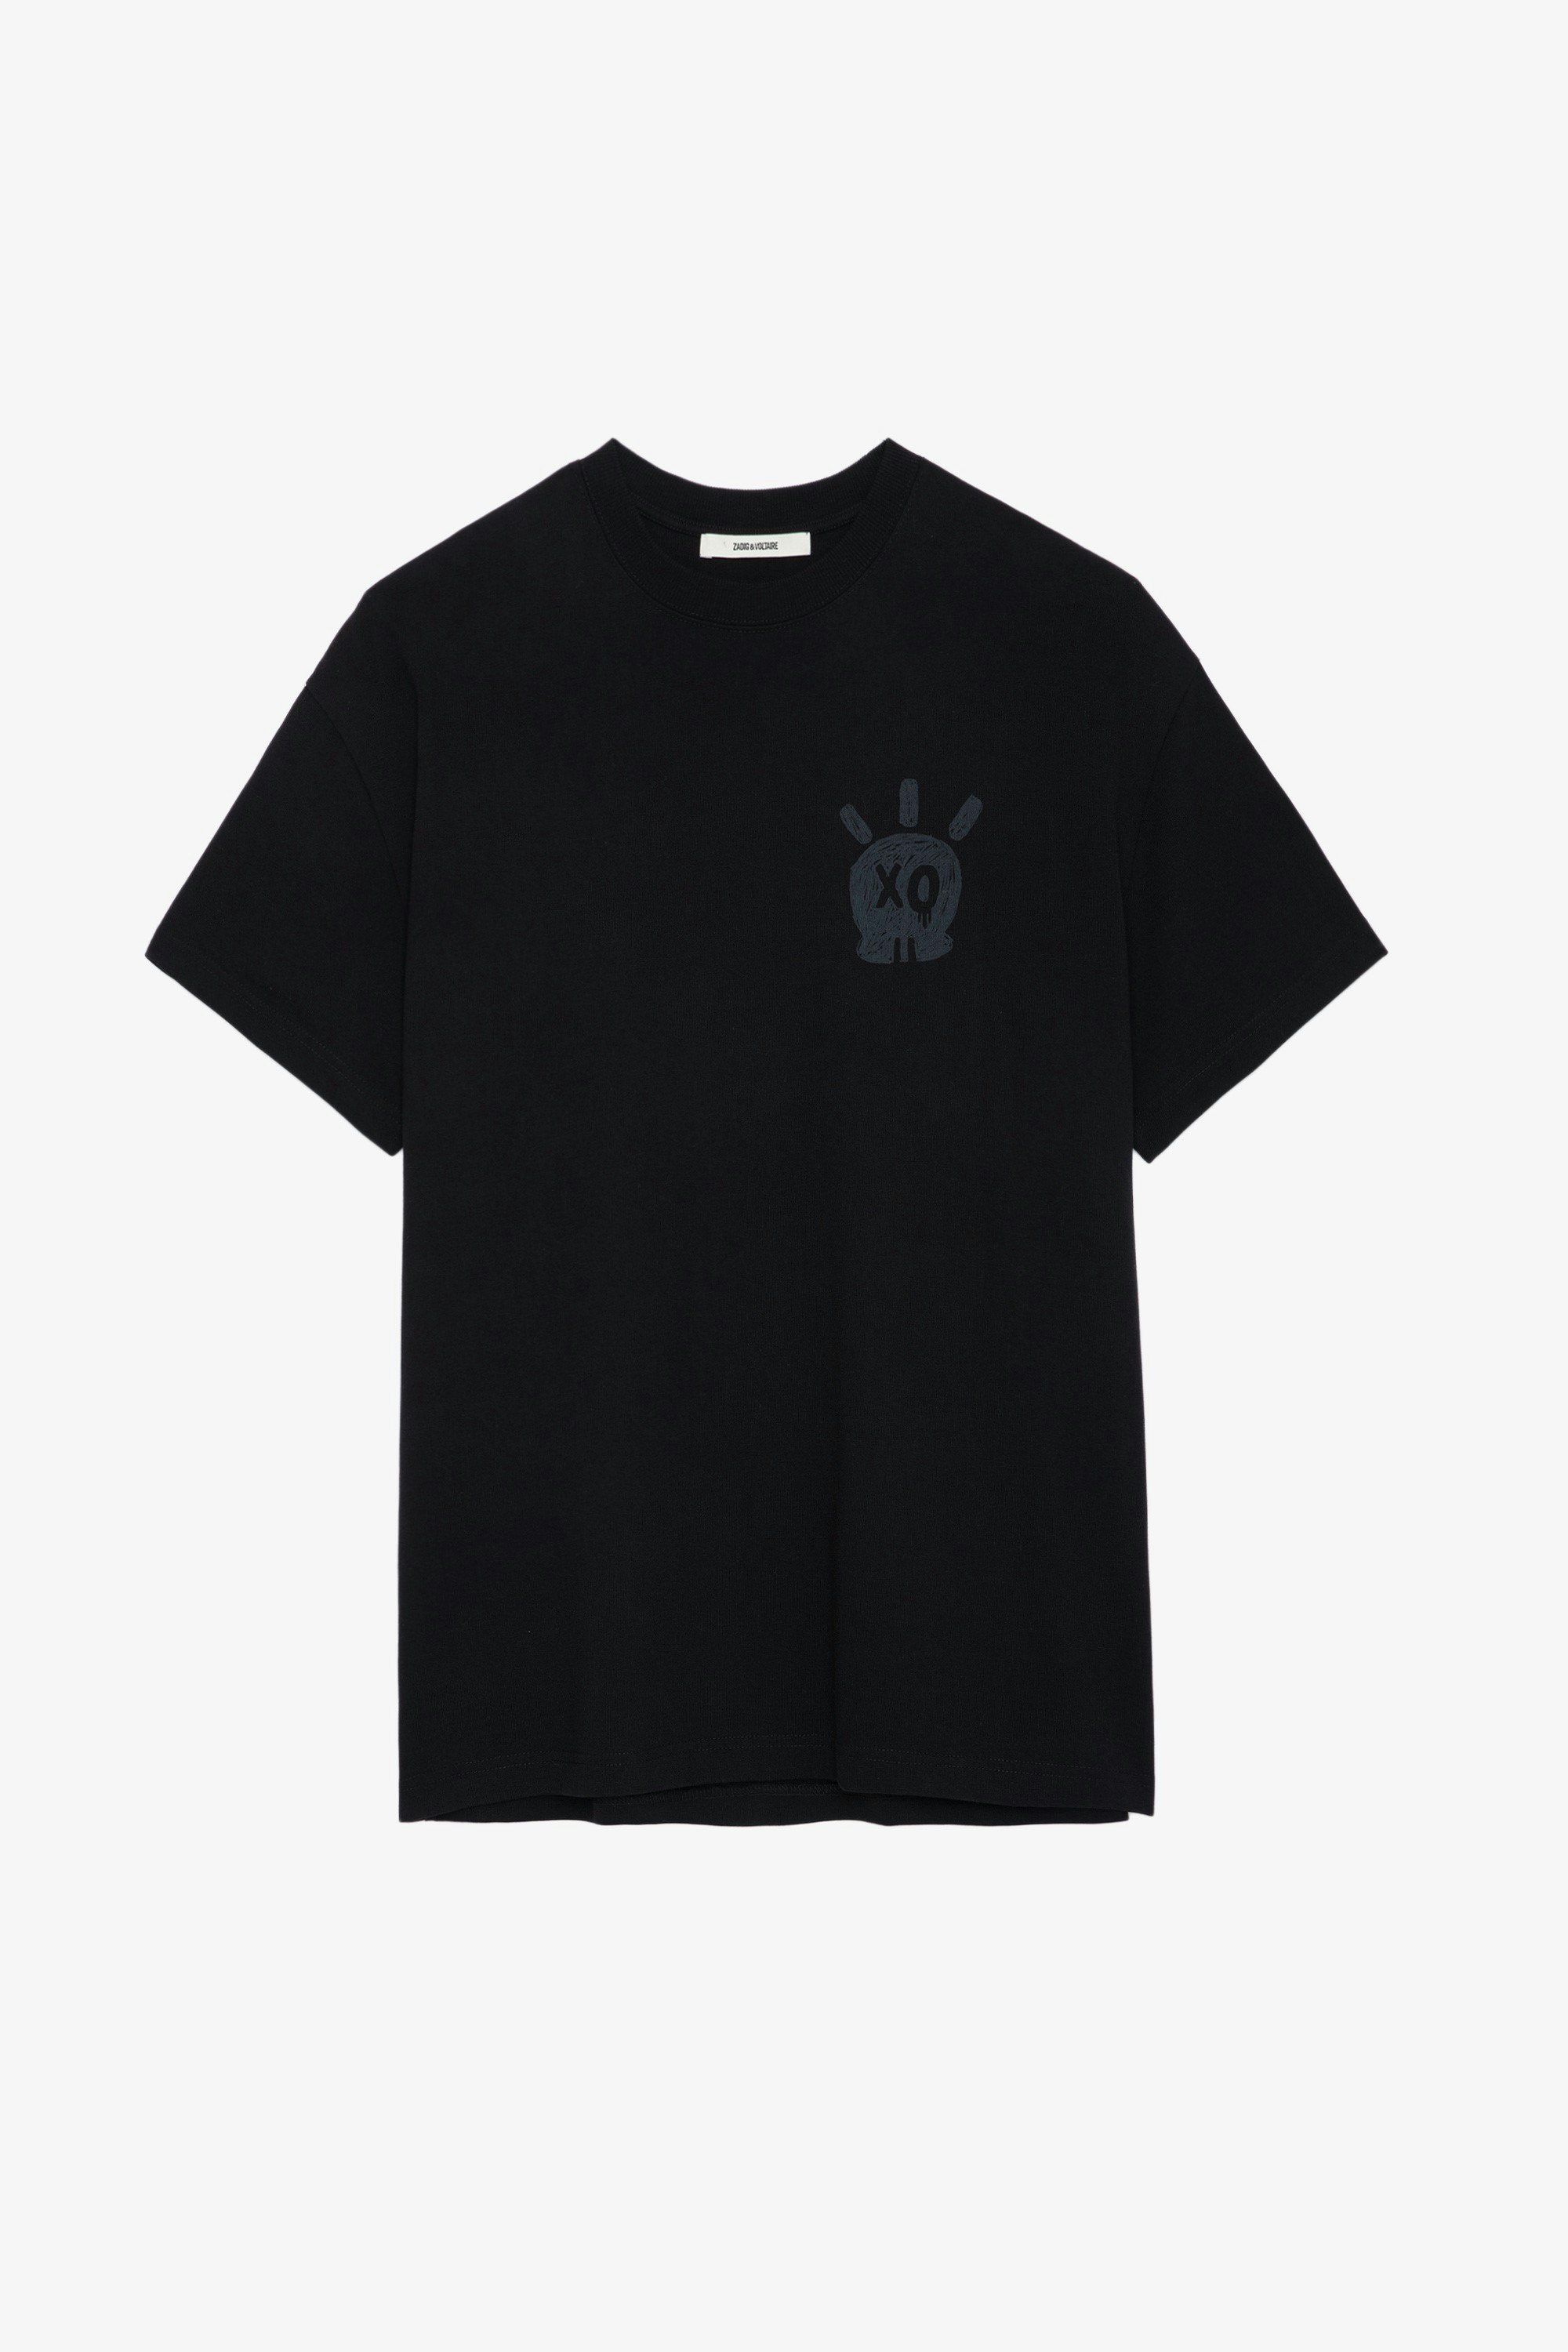 Camiseta Teddy Skull - Camiseta negra de algodón de manga corta con cuello redondo y estampado Skull XO.